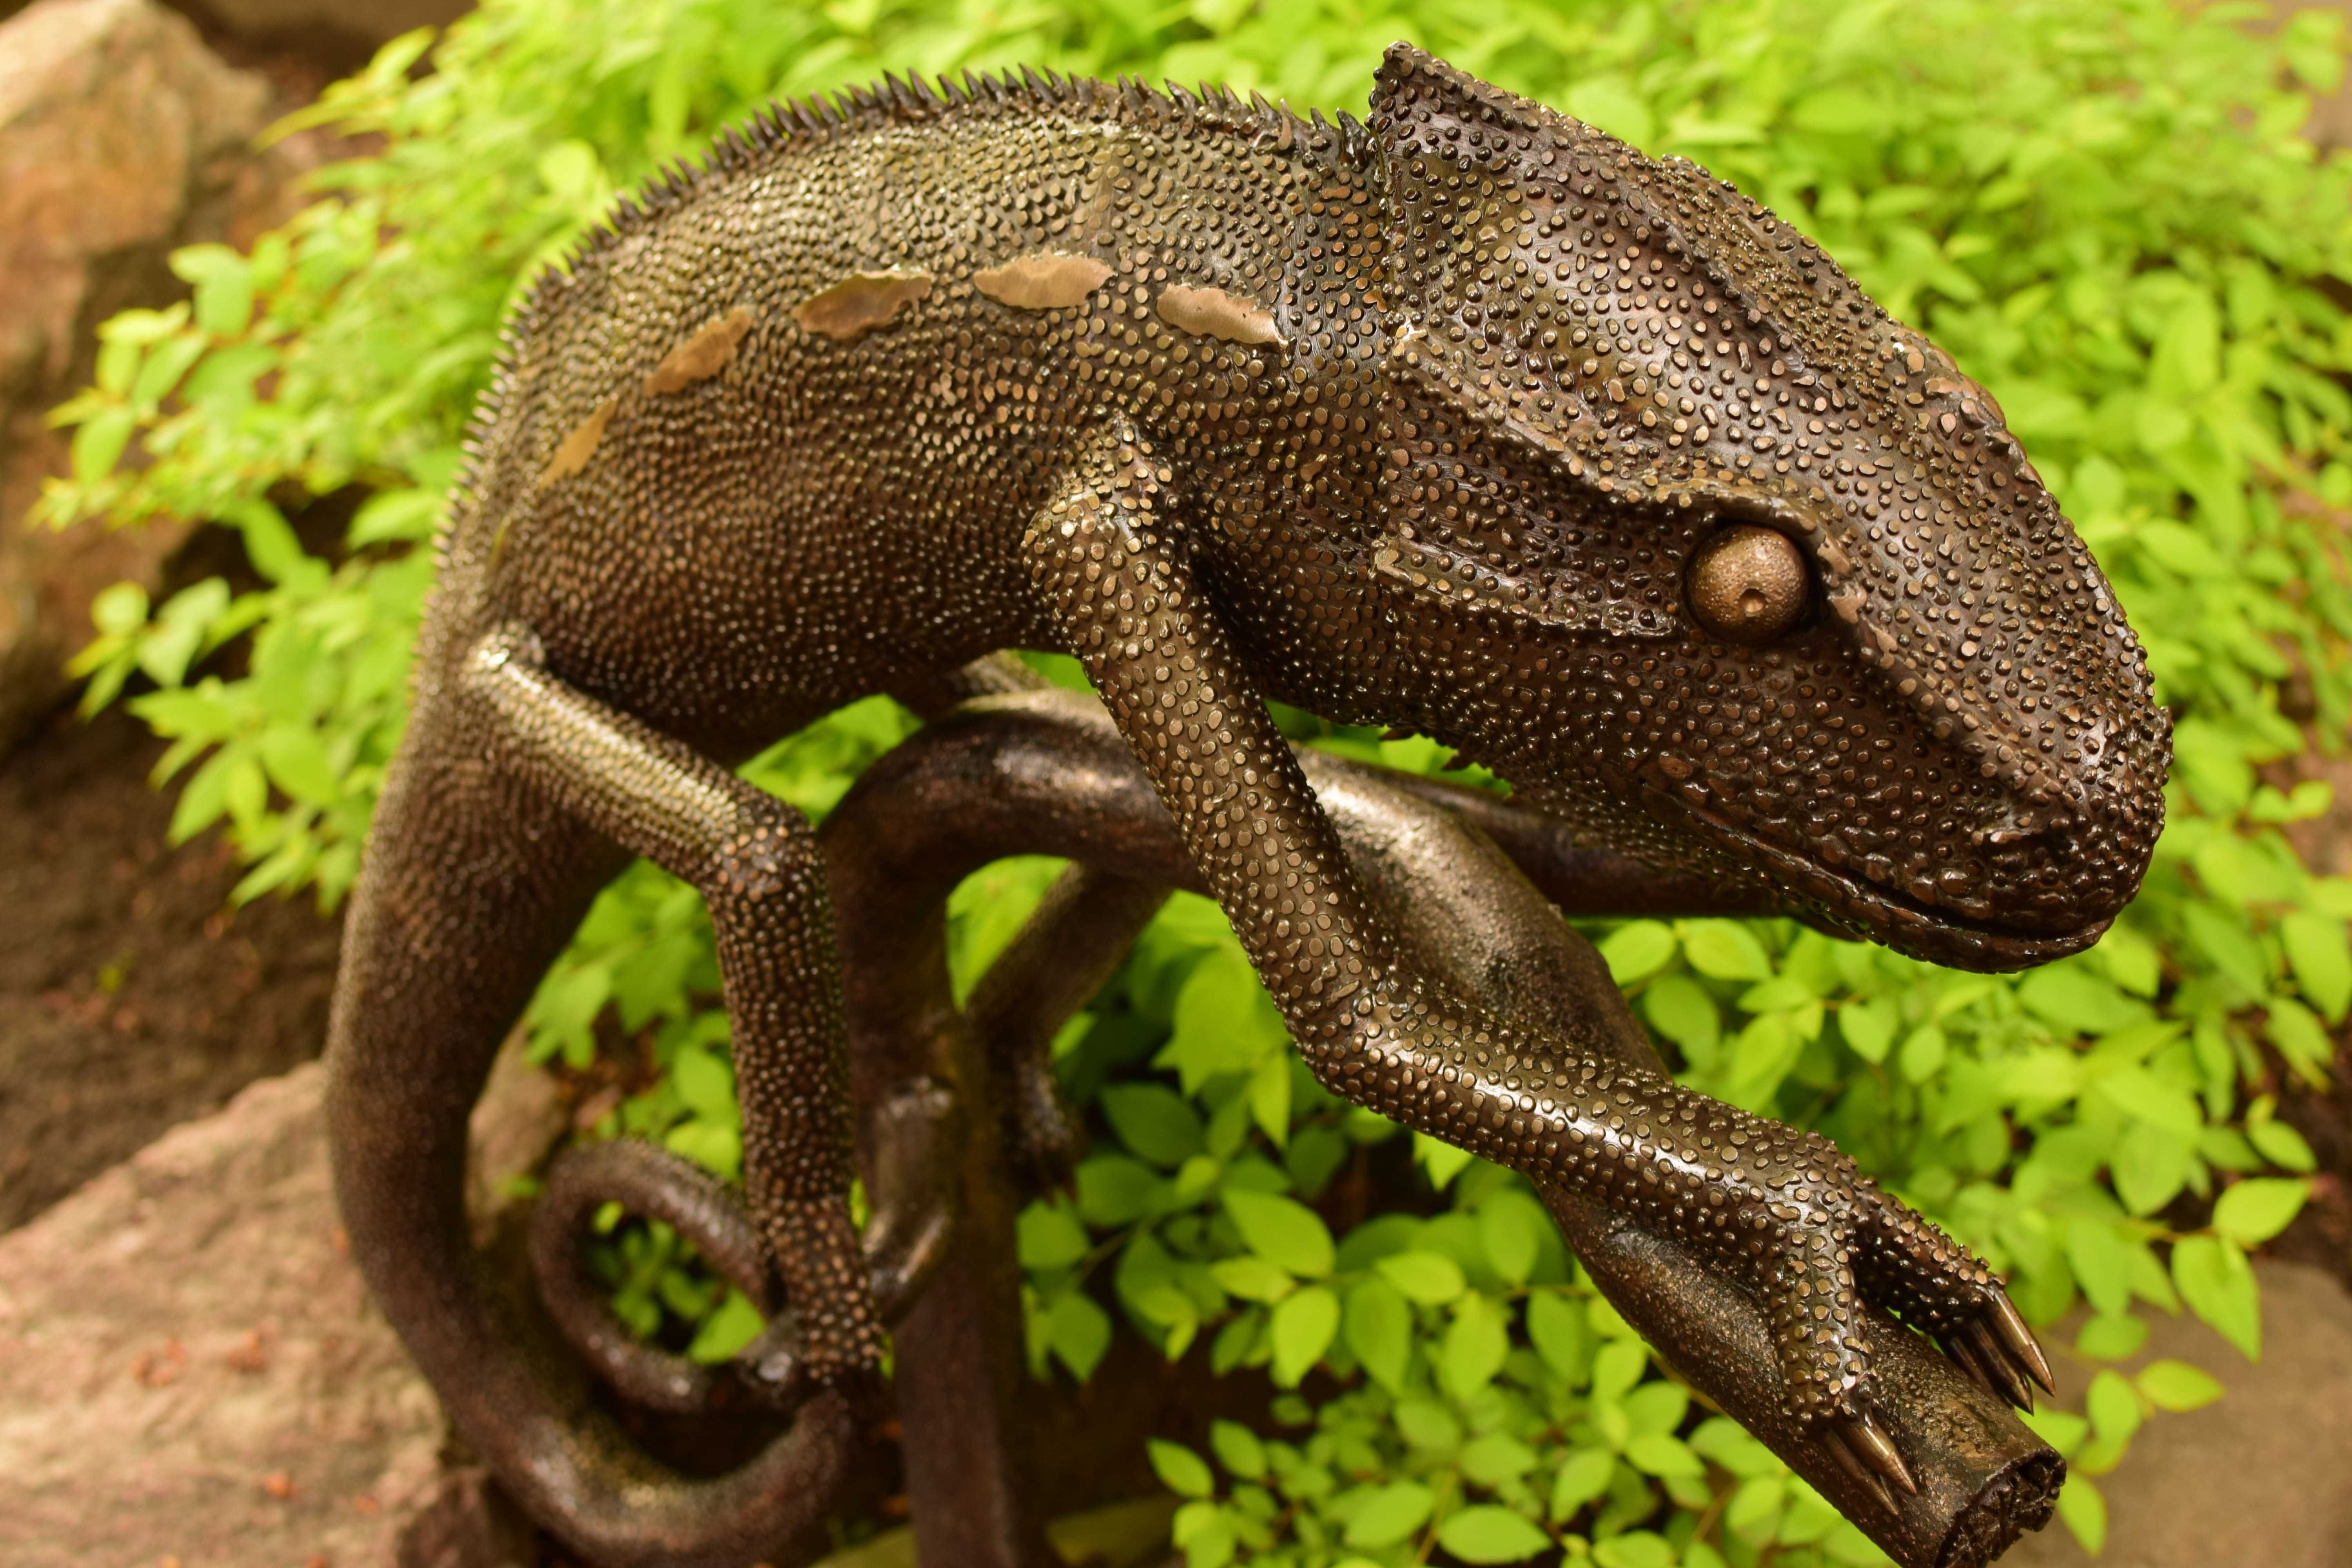 садовая кованная скульптура хамелеон из нержавеющей стали ручной работ